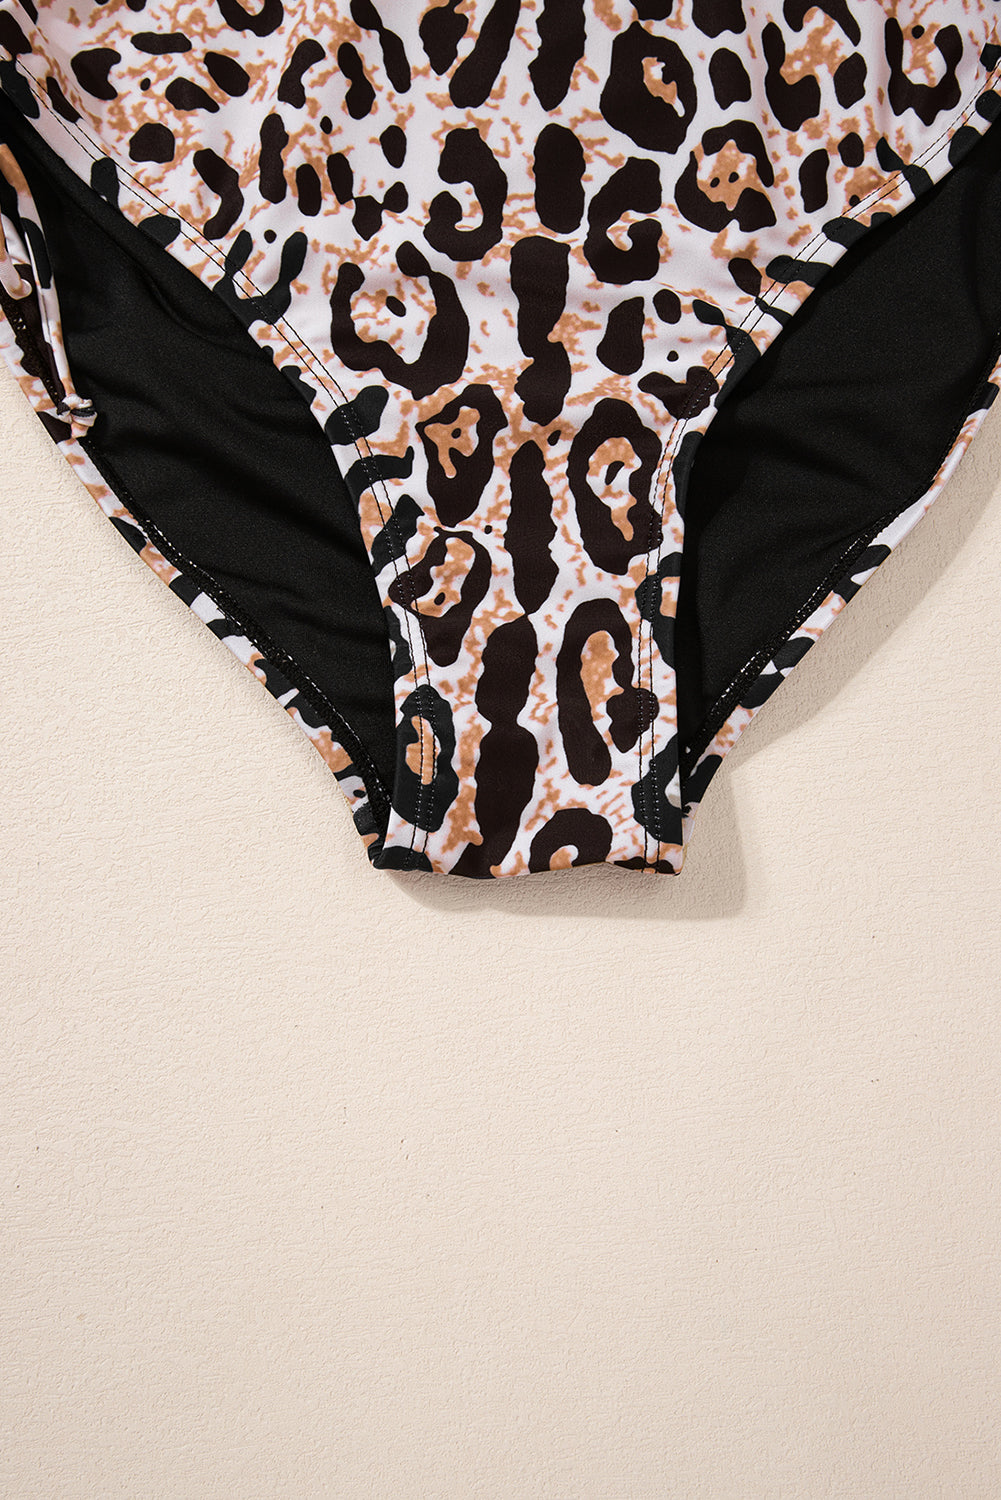 Crni kupaći kostim u obliku leoparda s prekriženom kravatom